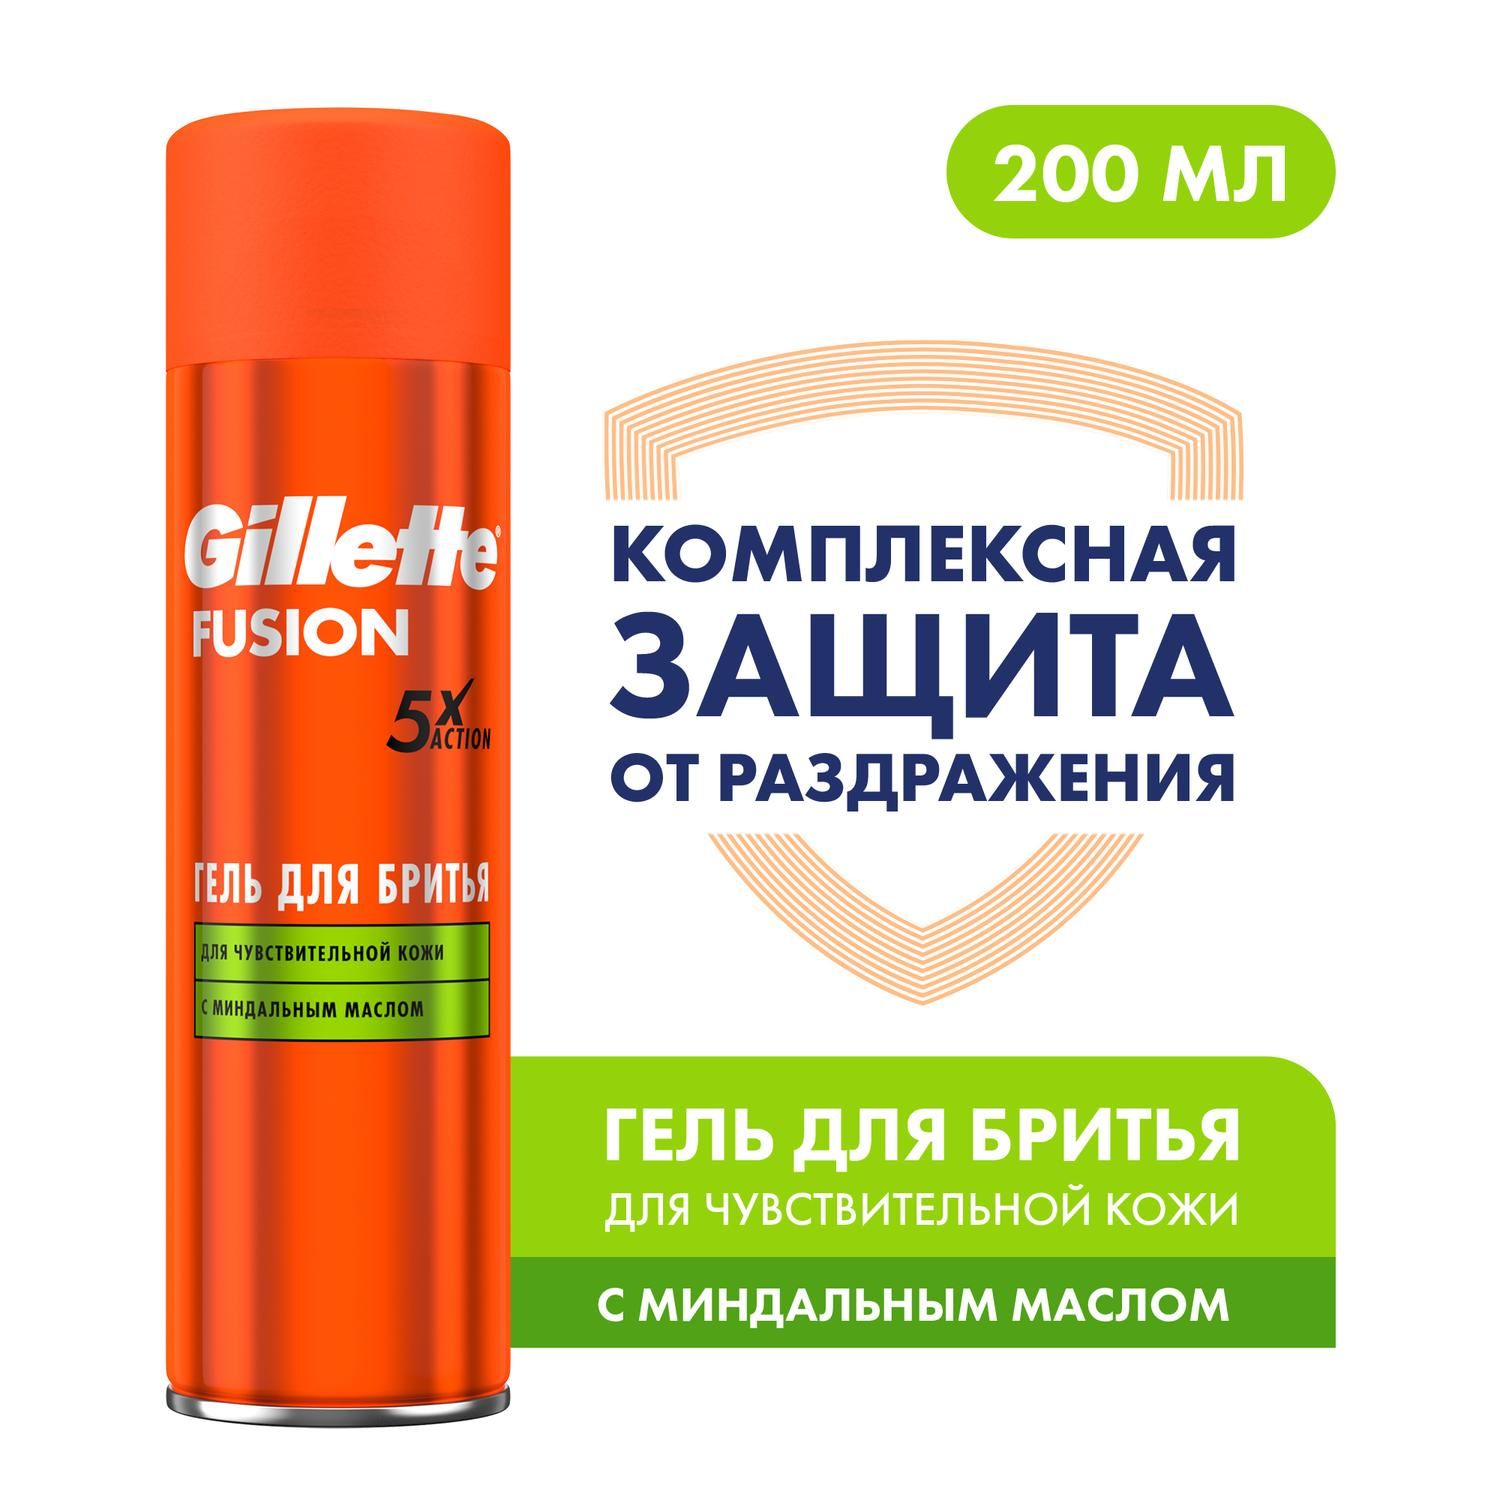 GilletteСредстводлябритья,гель,200мл